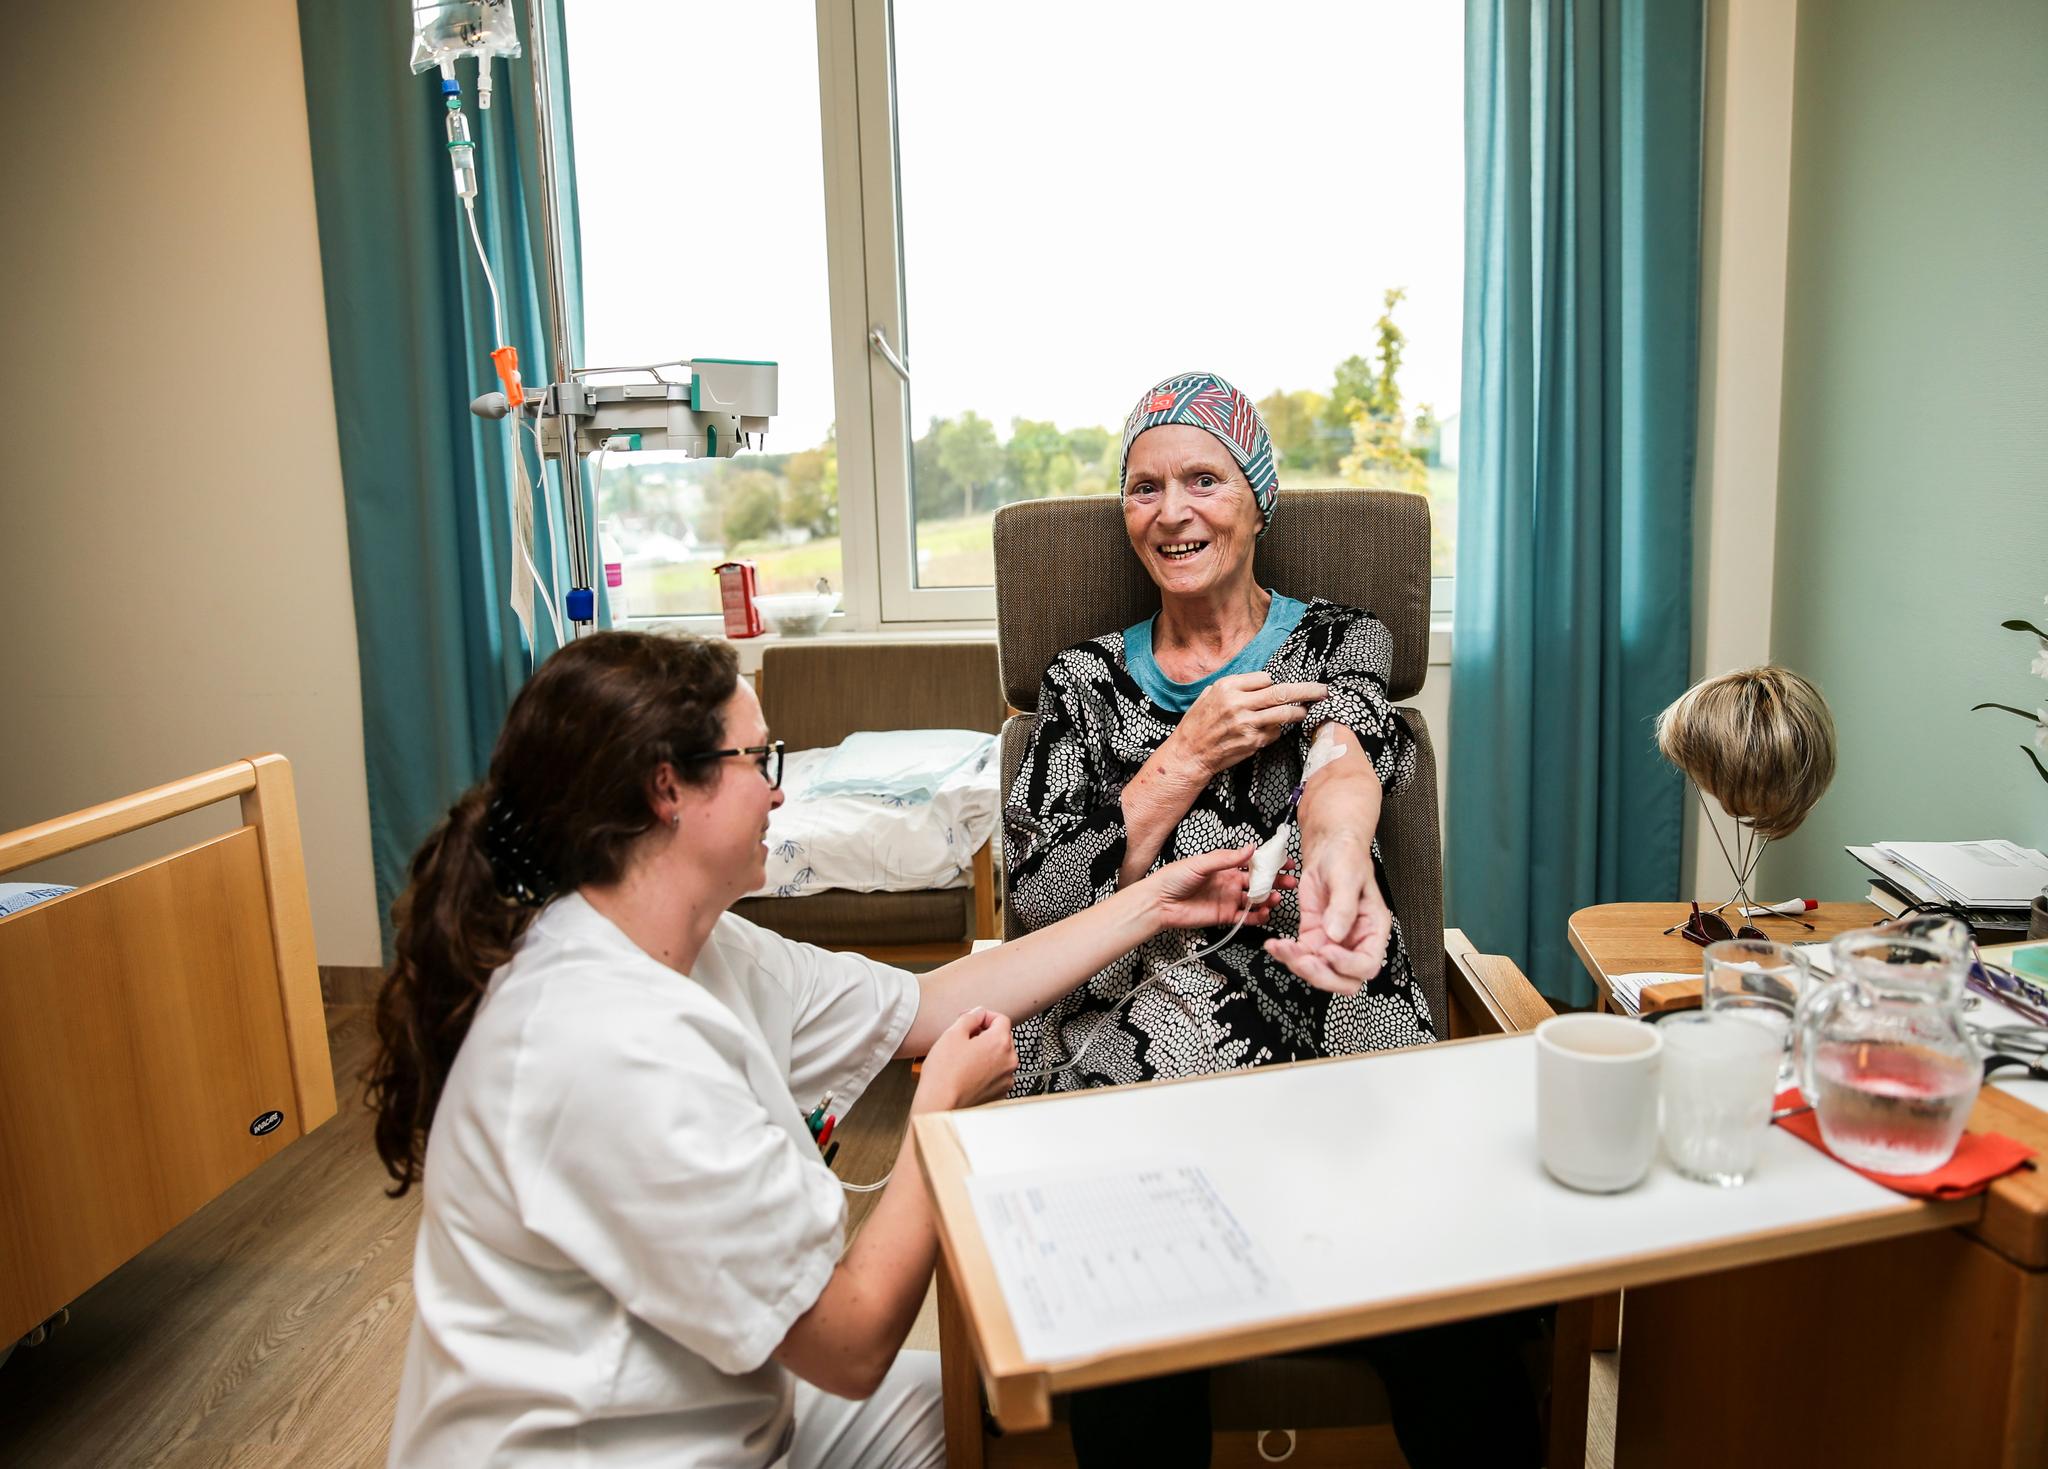  Ved Villa Smidsrød på Nøtterøy får beboere intravenøs behandling av sykepleier og slipper dermed sykehusinnleggelse. Her får Anne-Mari Krokene (74) intravenøs væske med hjelp av Linn Bjerkan (35) som er kreftsykepleier.